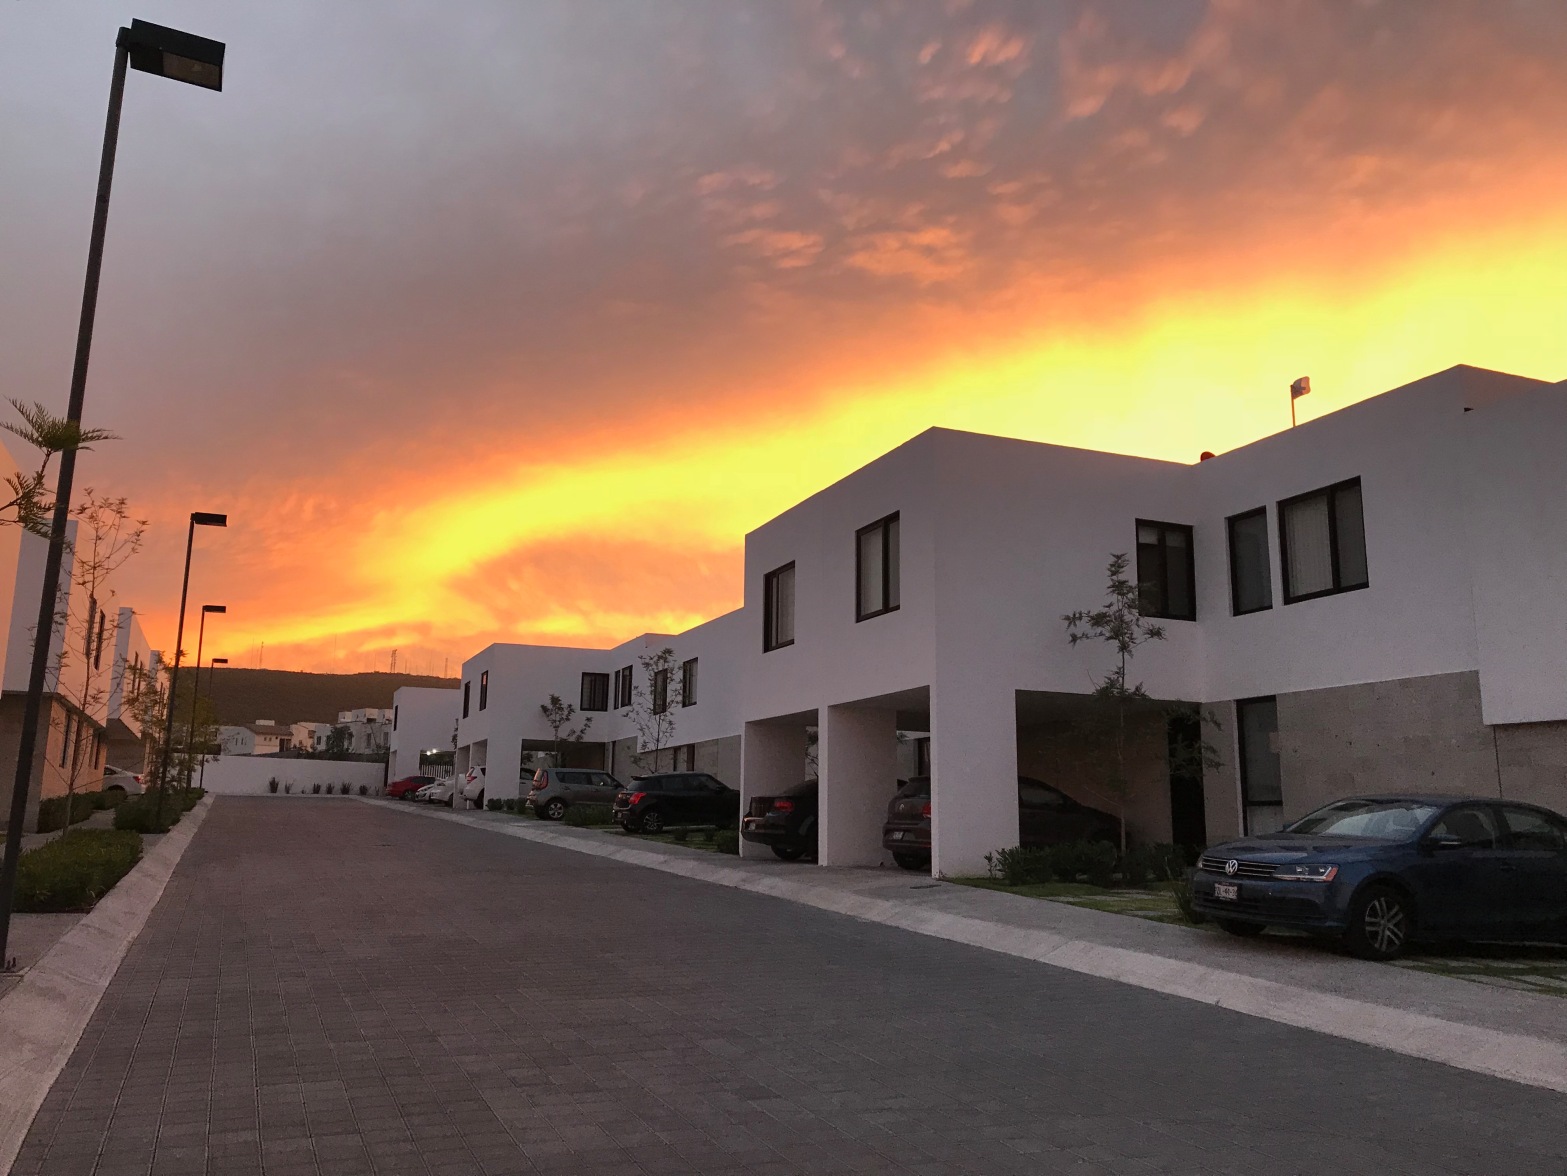 Sunrise over El Refugio